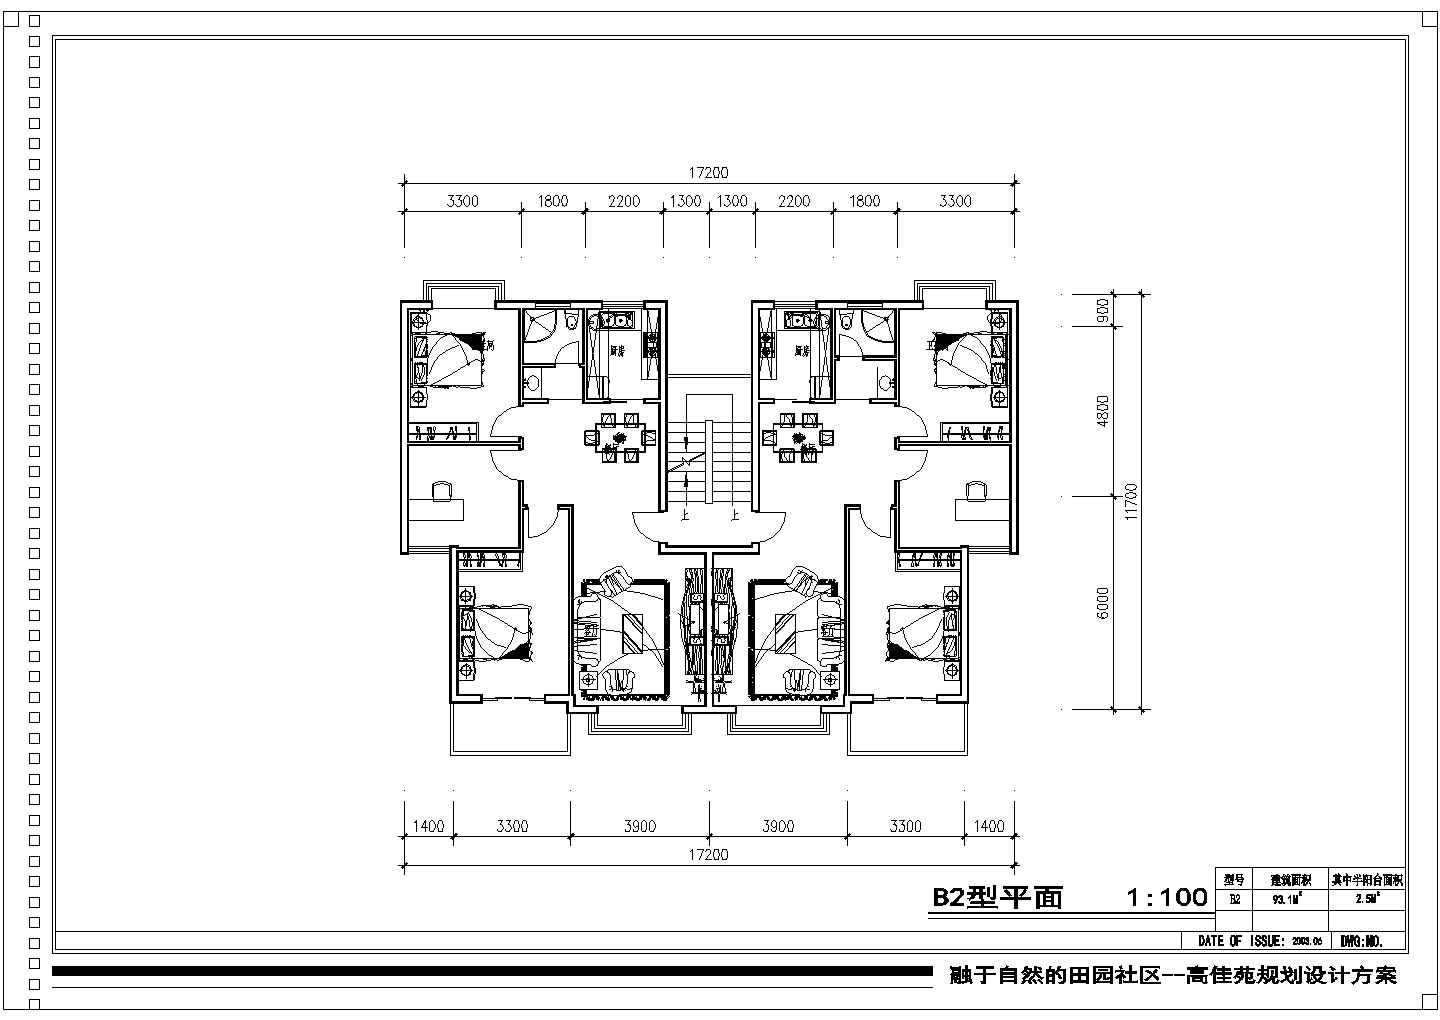 高佳苑小区户型平面图设计施工全套建筑平立面CAD图纸